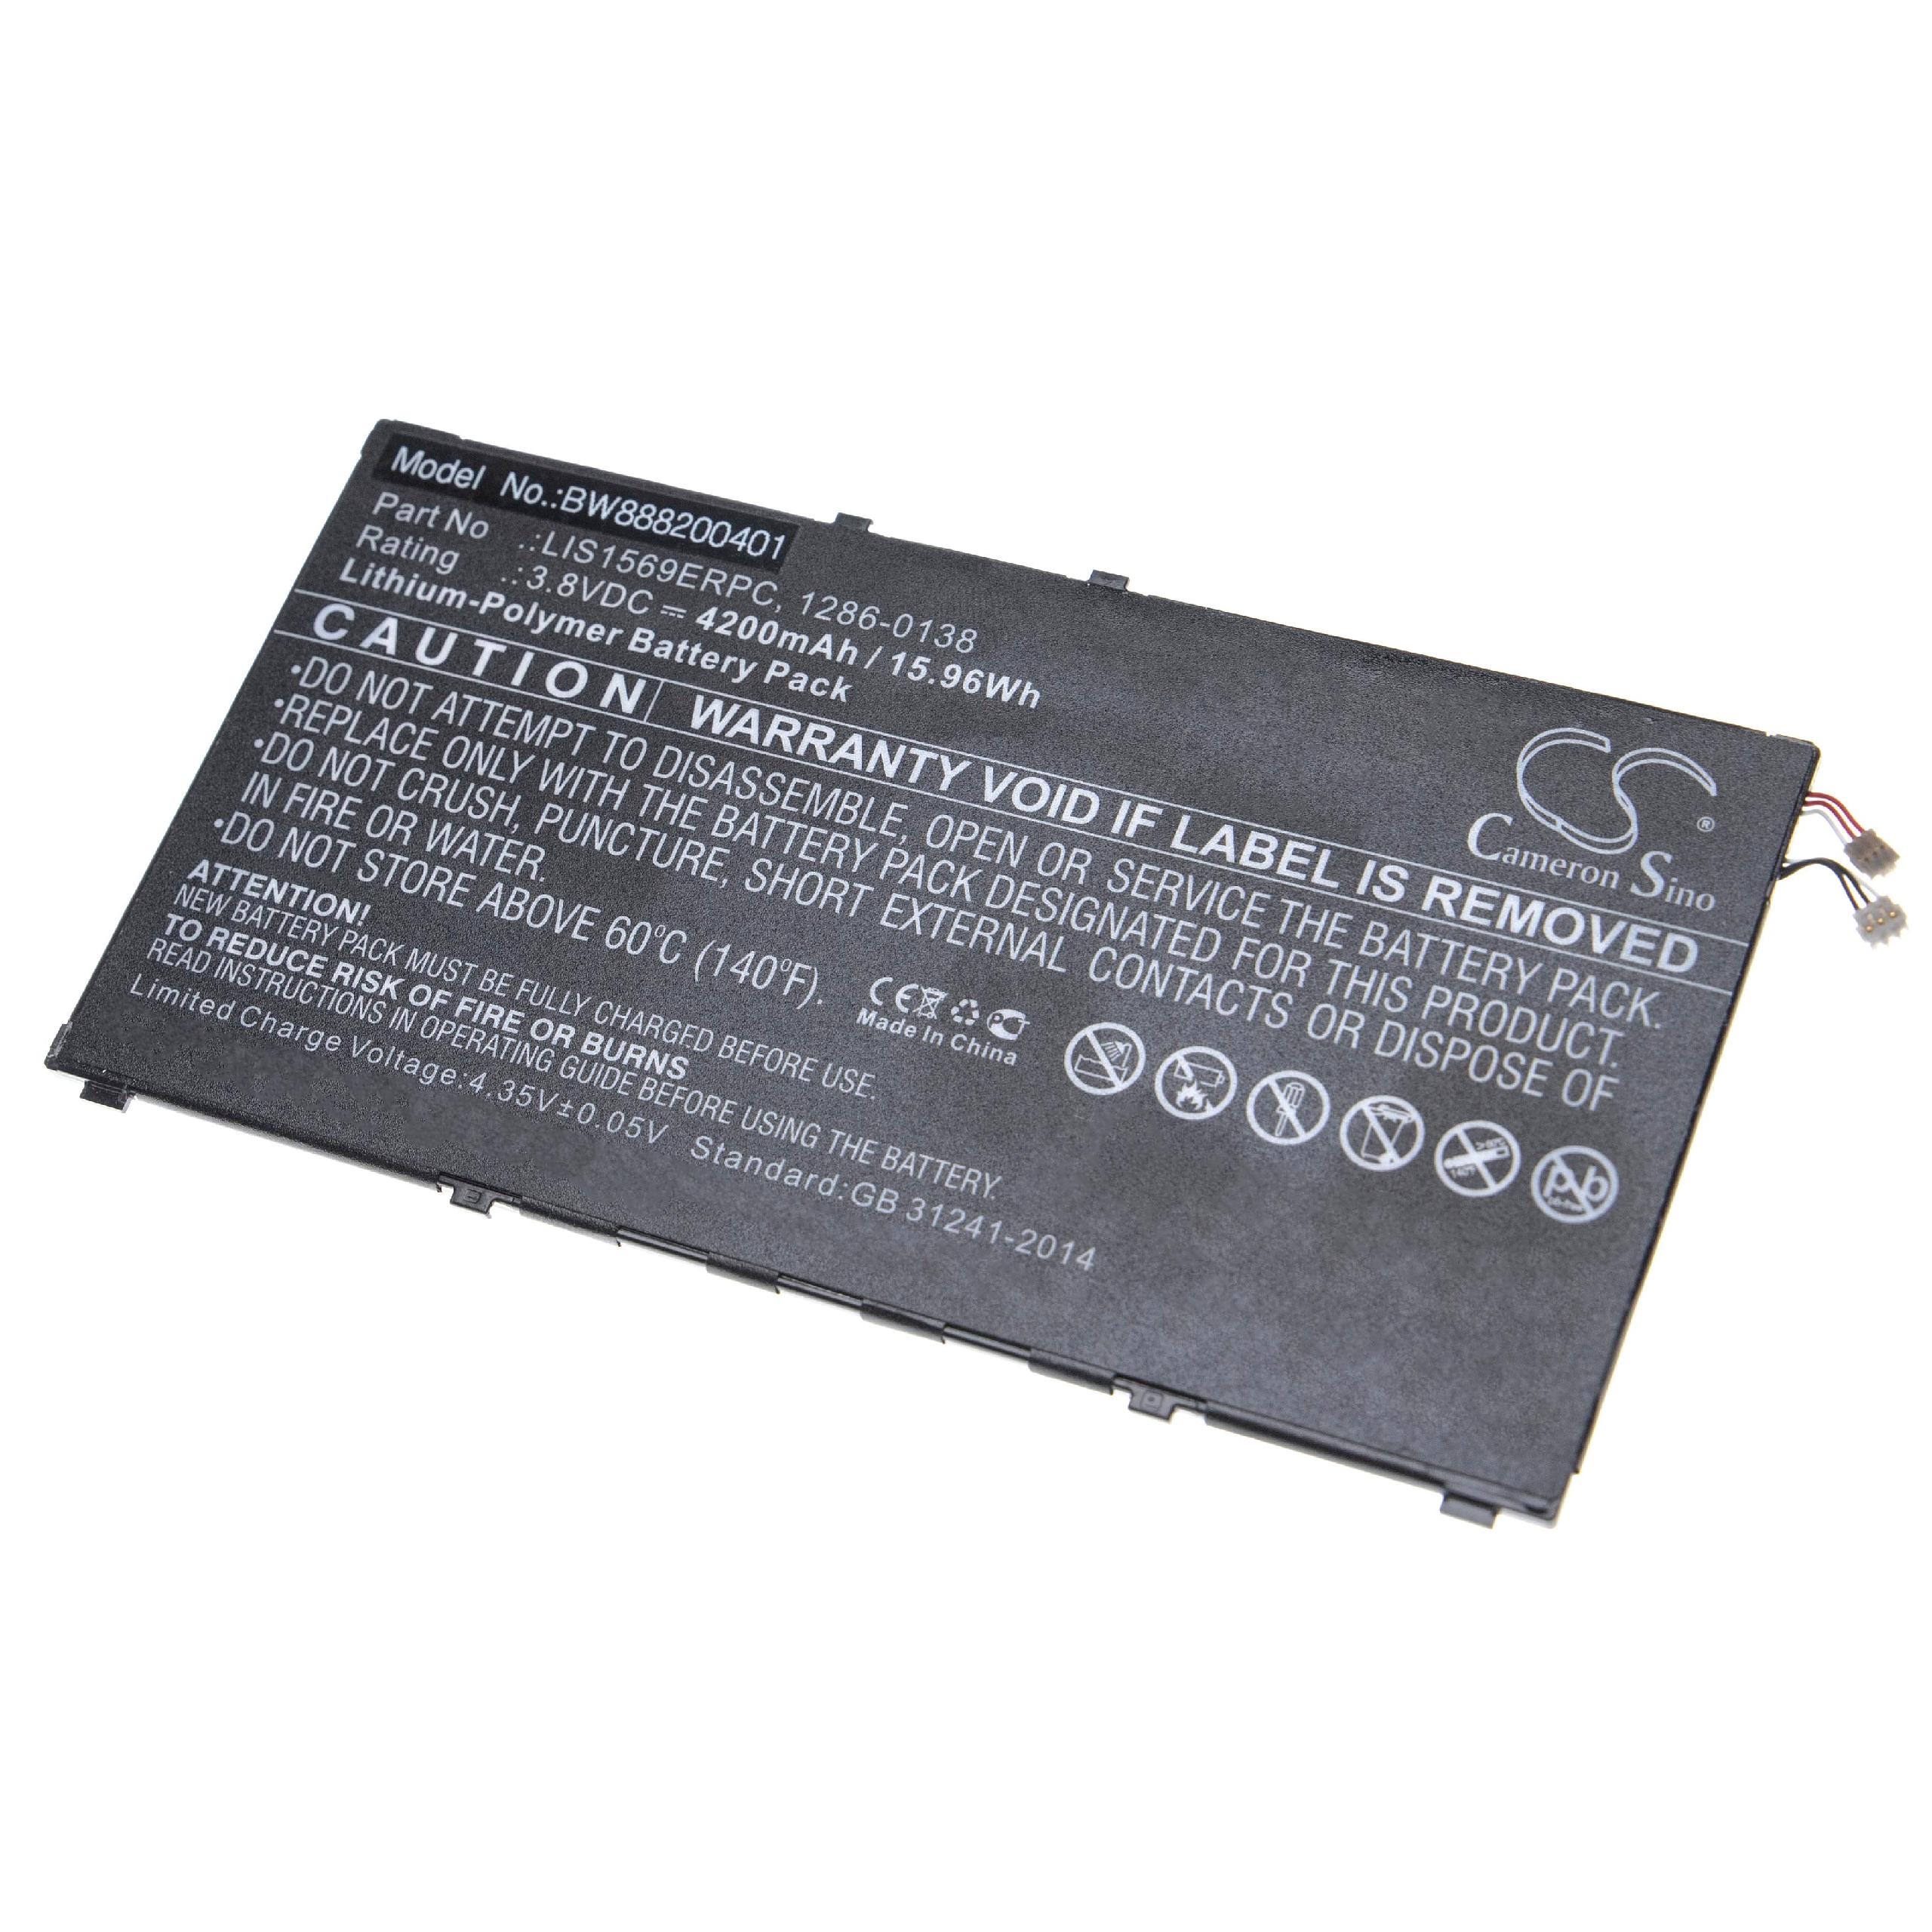 Batería reemplaza Sony LIS1569ERPC, 1286-0138 para móvil, teléfono Sony - 4200 mAh 3,8 V Li-poli